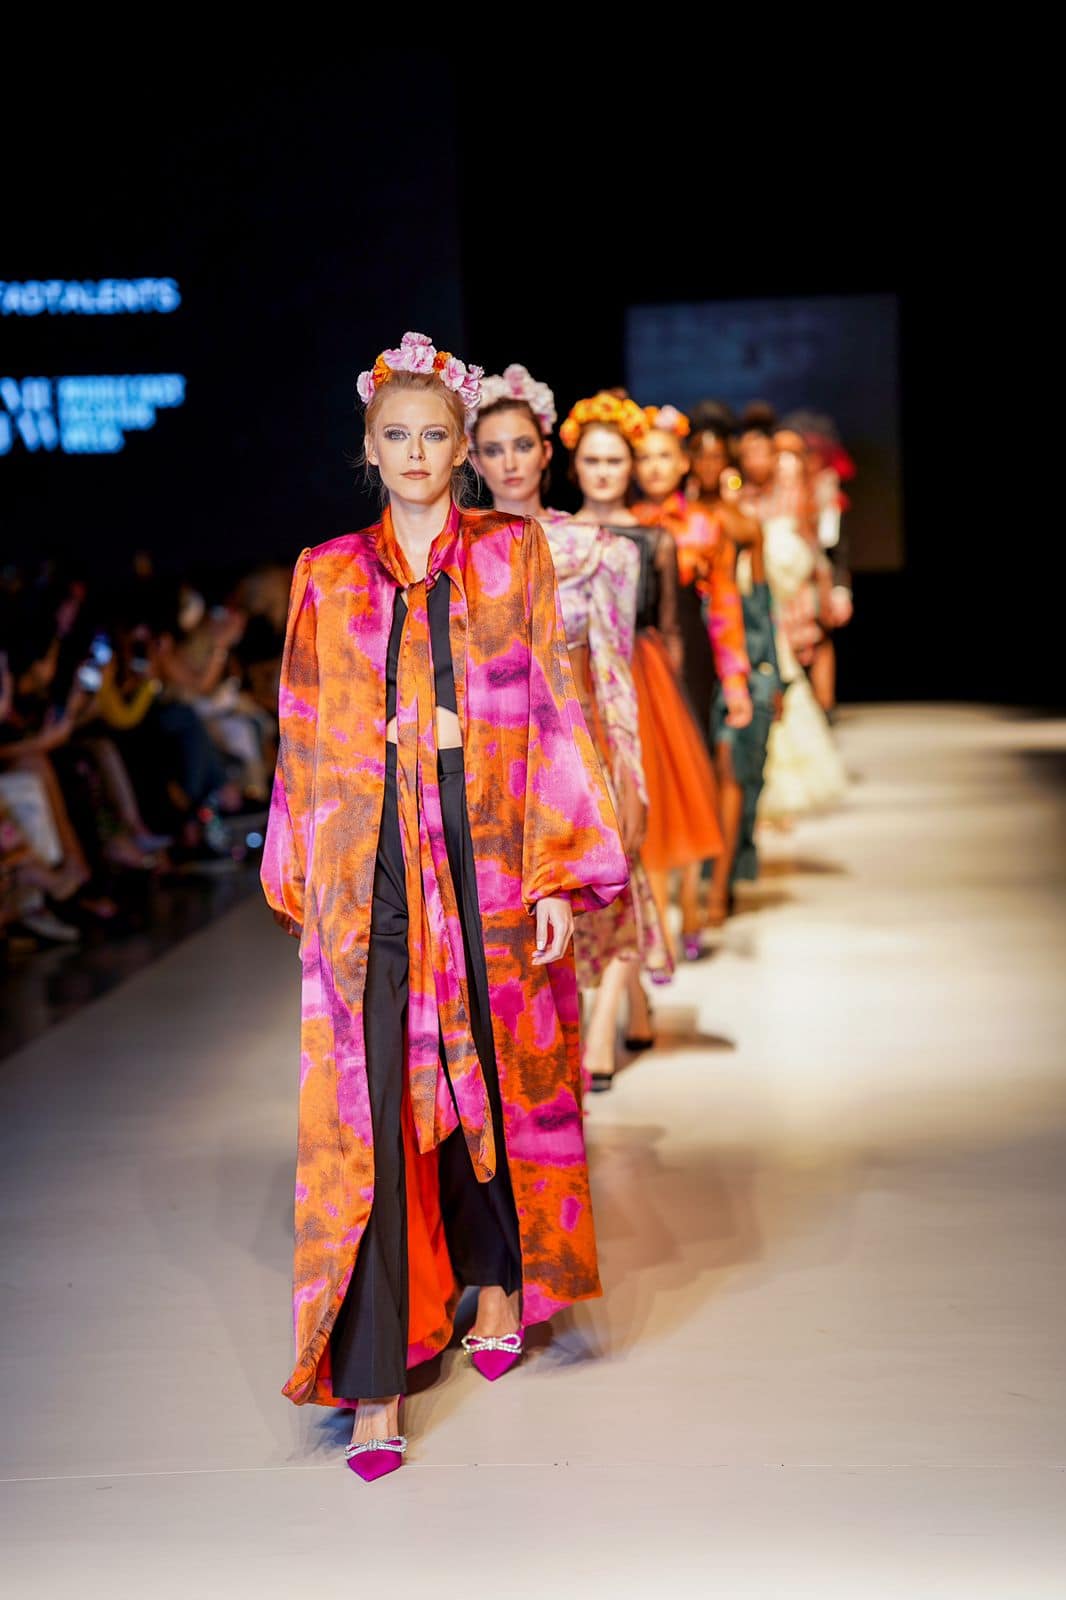 Bližnjevzhodni teden mode je uspešno spustil zaveso nad svojo uvodno izdajo v Dubaju